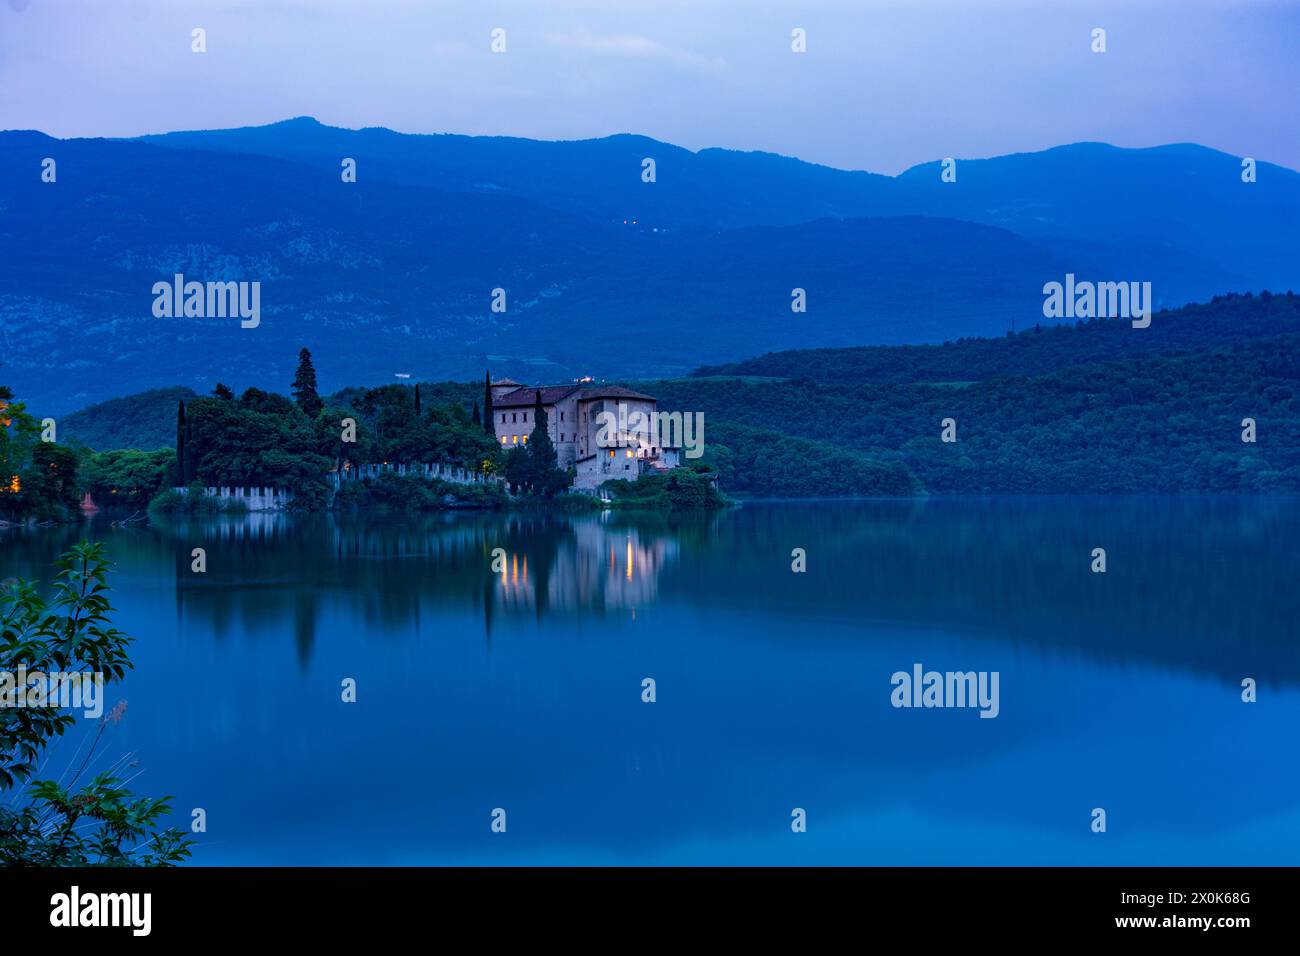 Madruzzo, lake Lago di Toblino, Castel Toblino Castle in Trentino, Trentino-South Tyrol, Italy Stock Photo